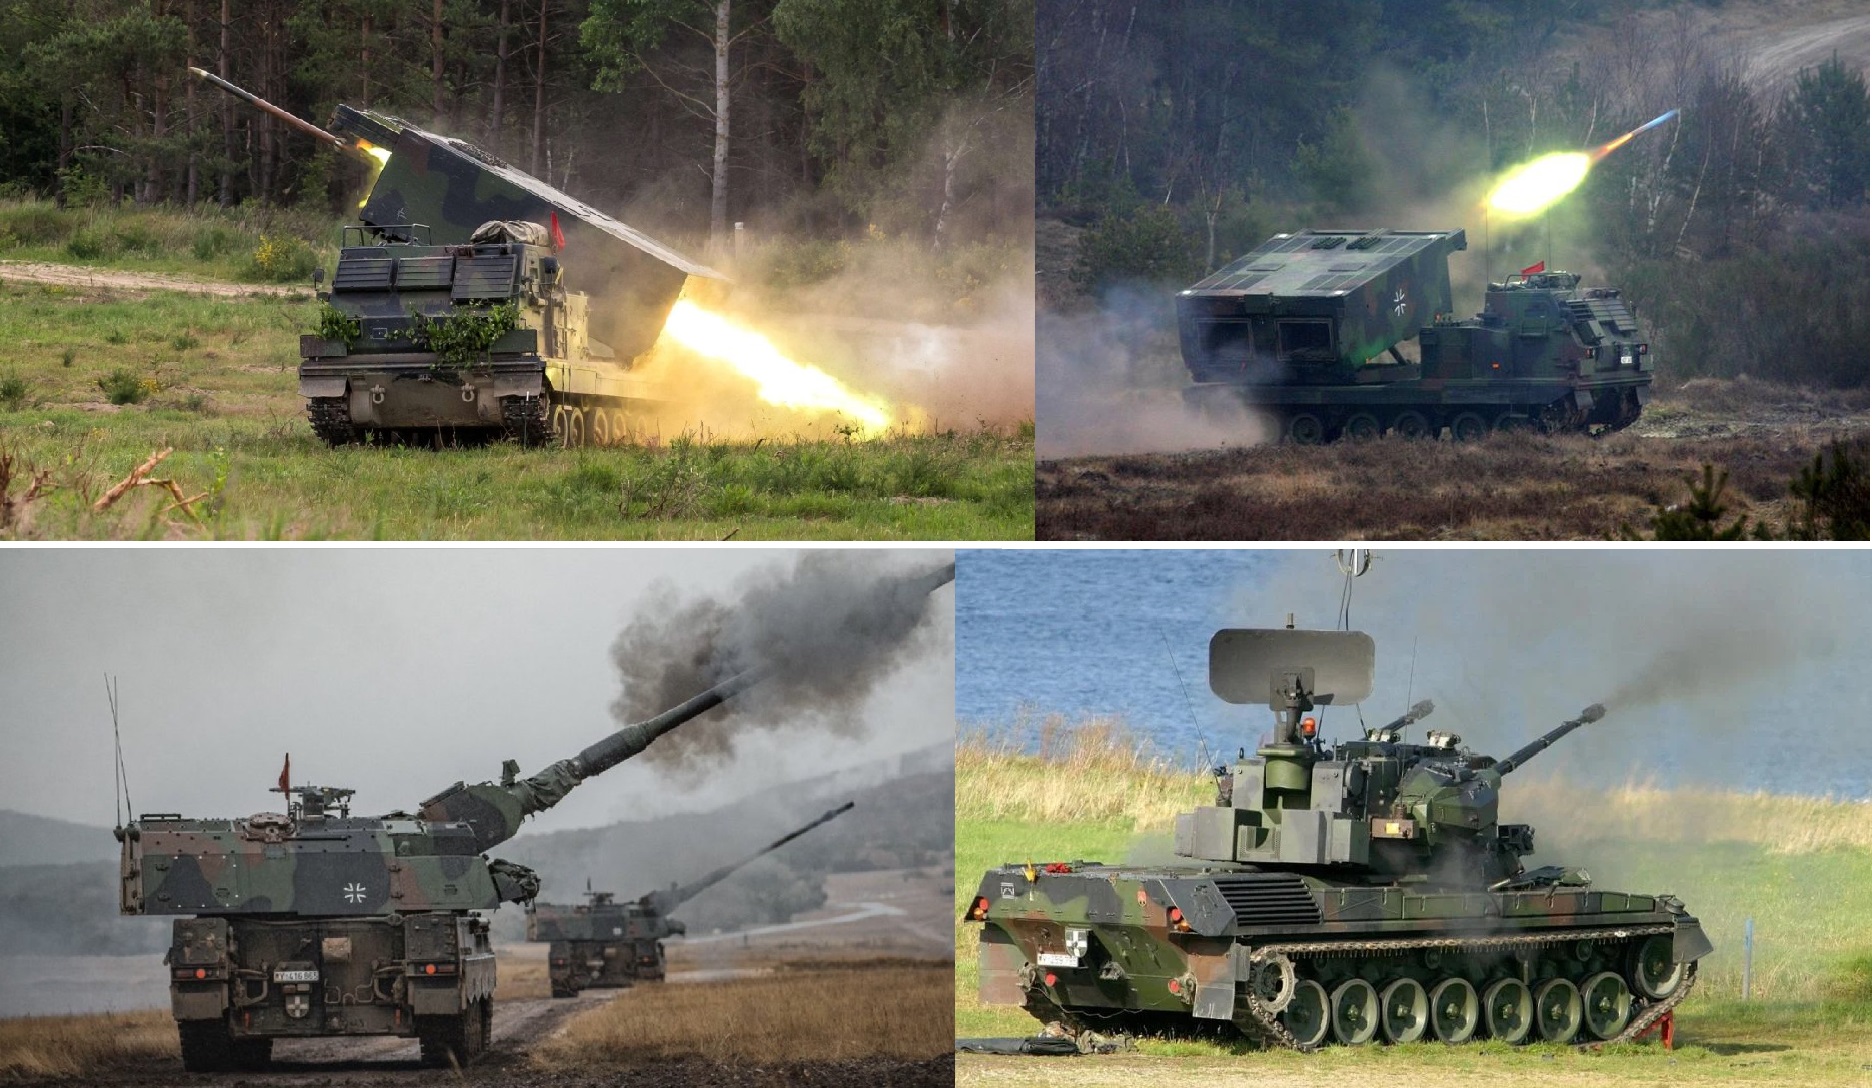 Dziesięć haubic PzH 2000, pięć czołgów przeciwlotniczych Gepard i trzy systemy rakietowe MARS II - Niemcy poinformowały o przekazaniu broni na Ukrainę